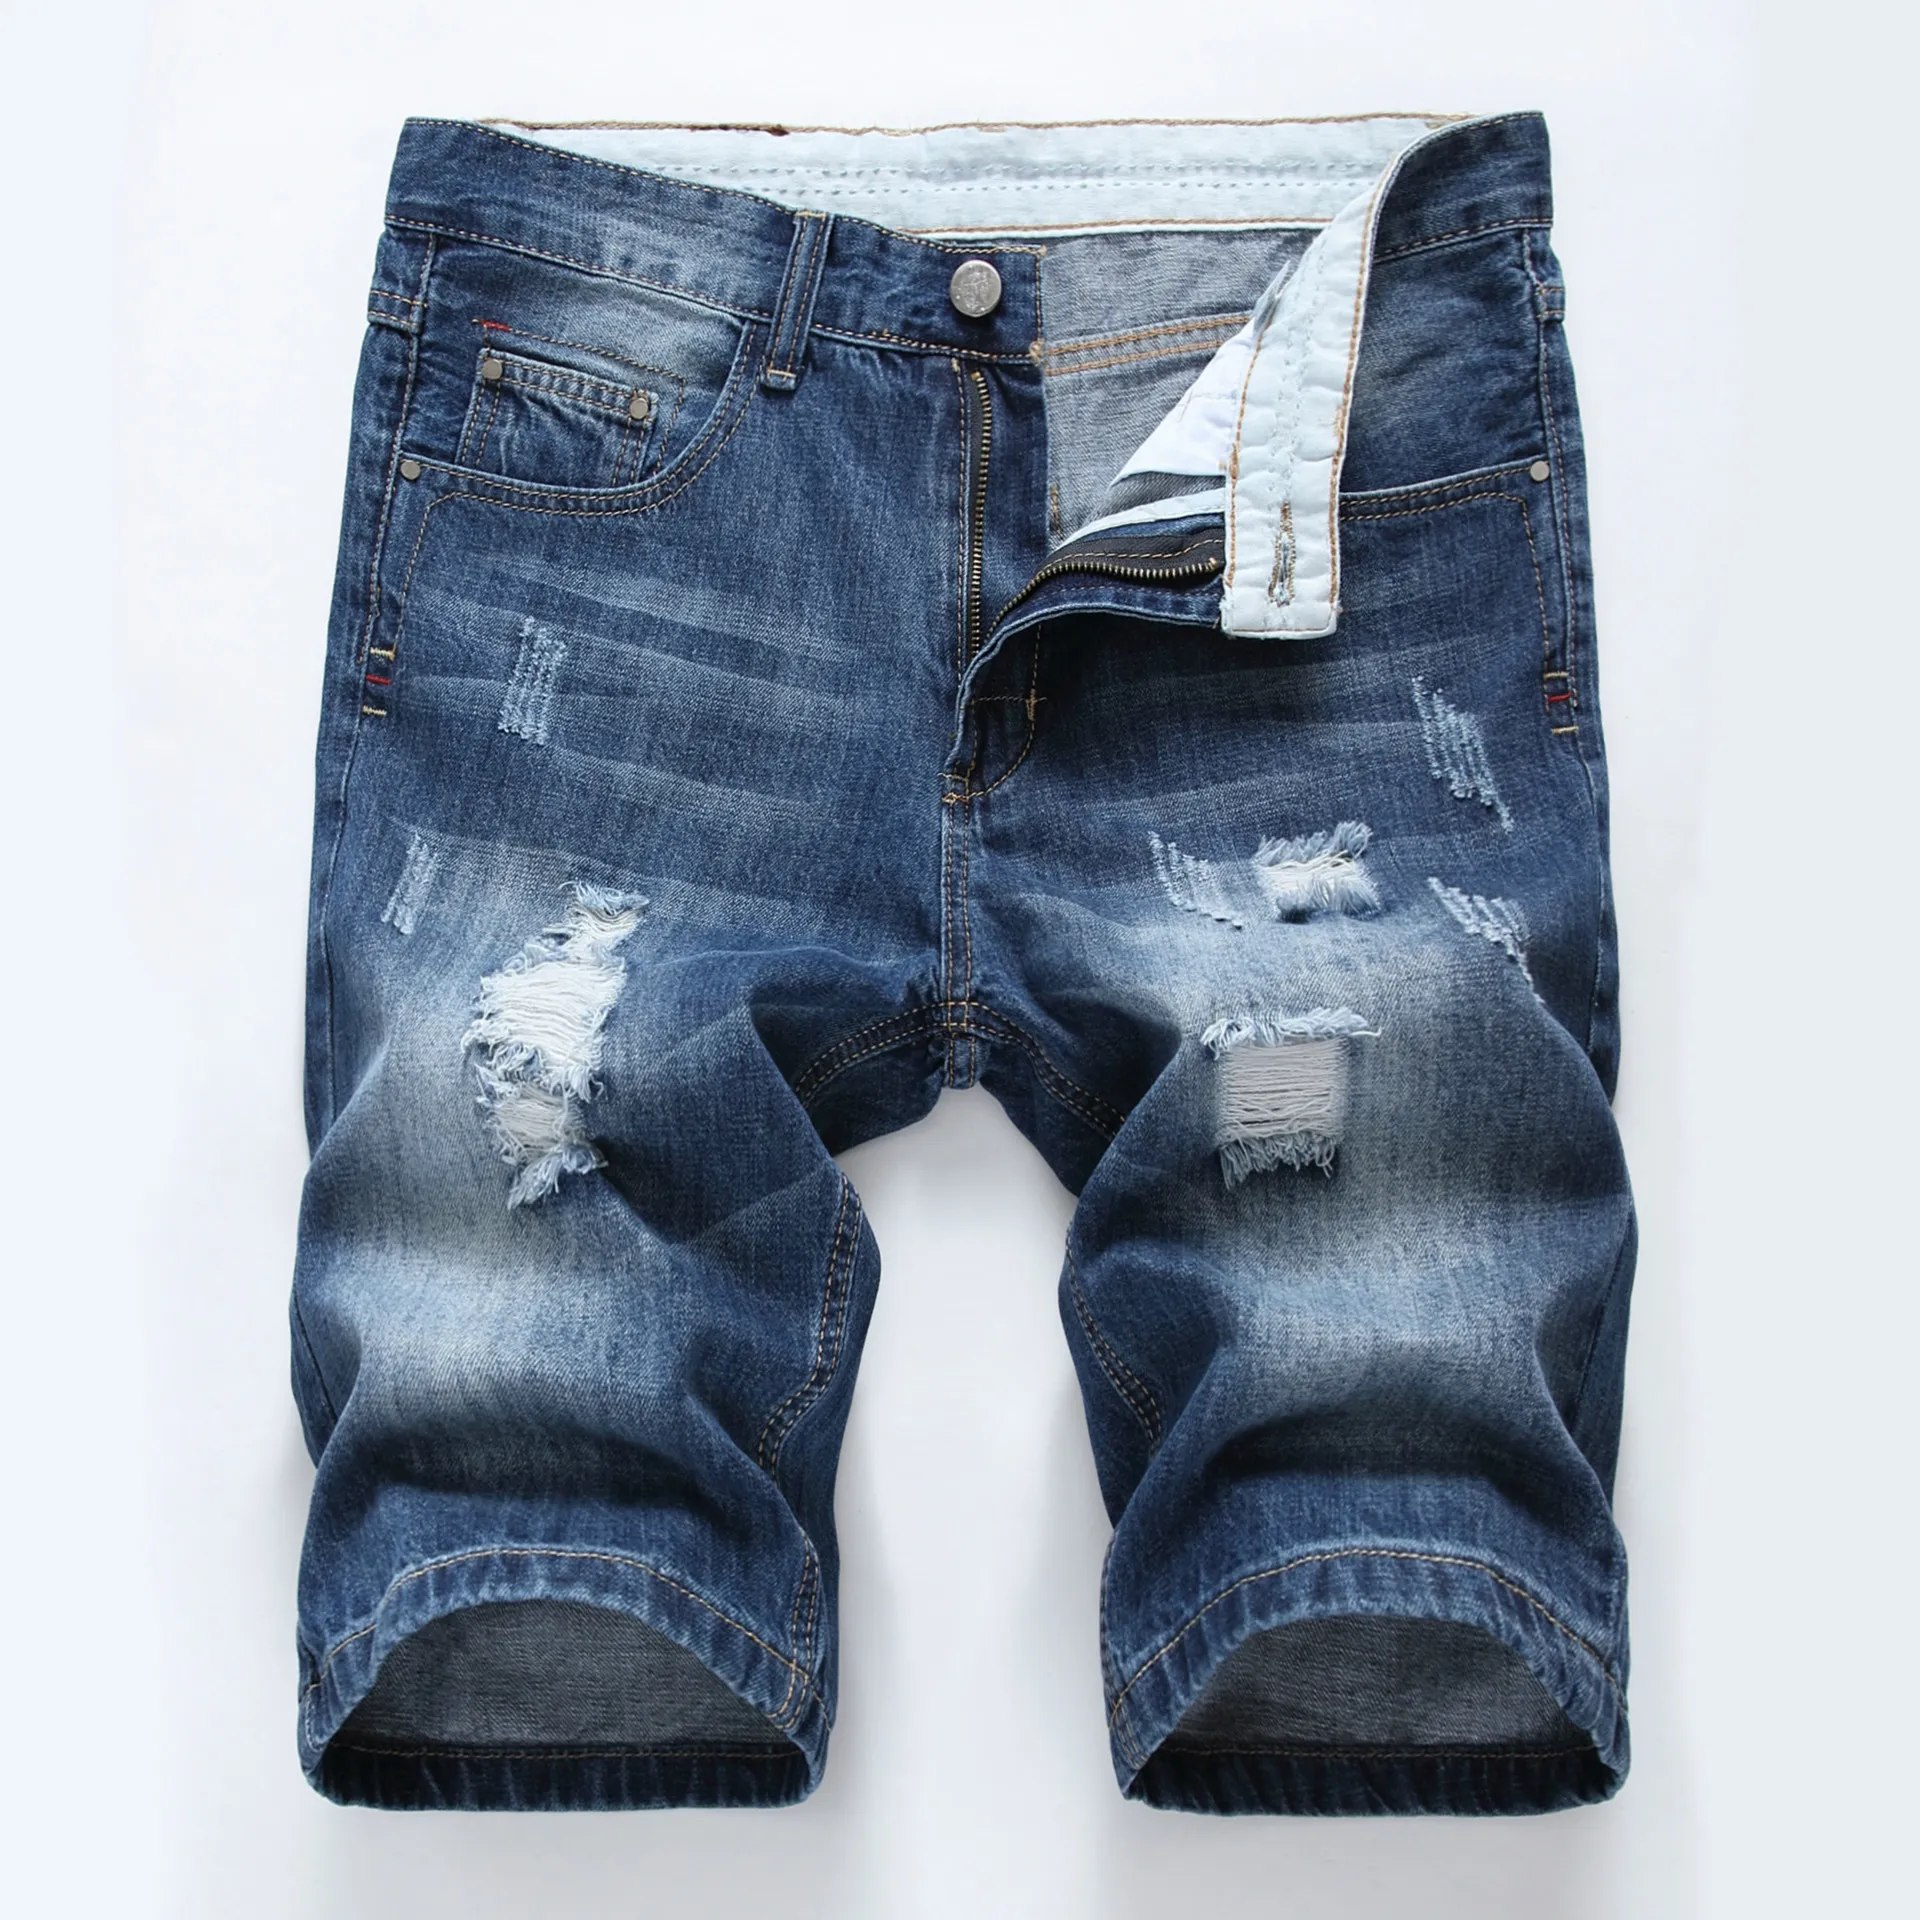 Pantaloncini strappati strappati da uomo causali Jeans dritti slim fit estate denim hip hop abbigliamento streetwear